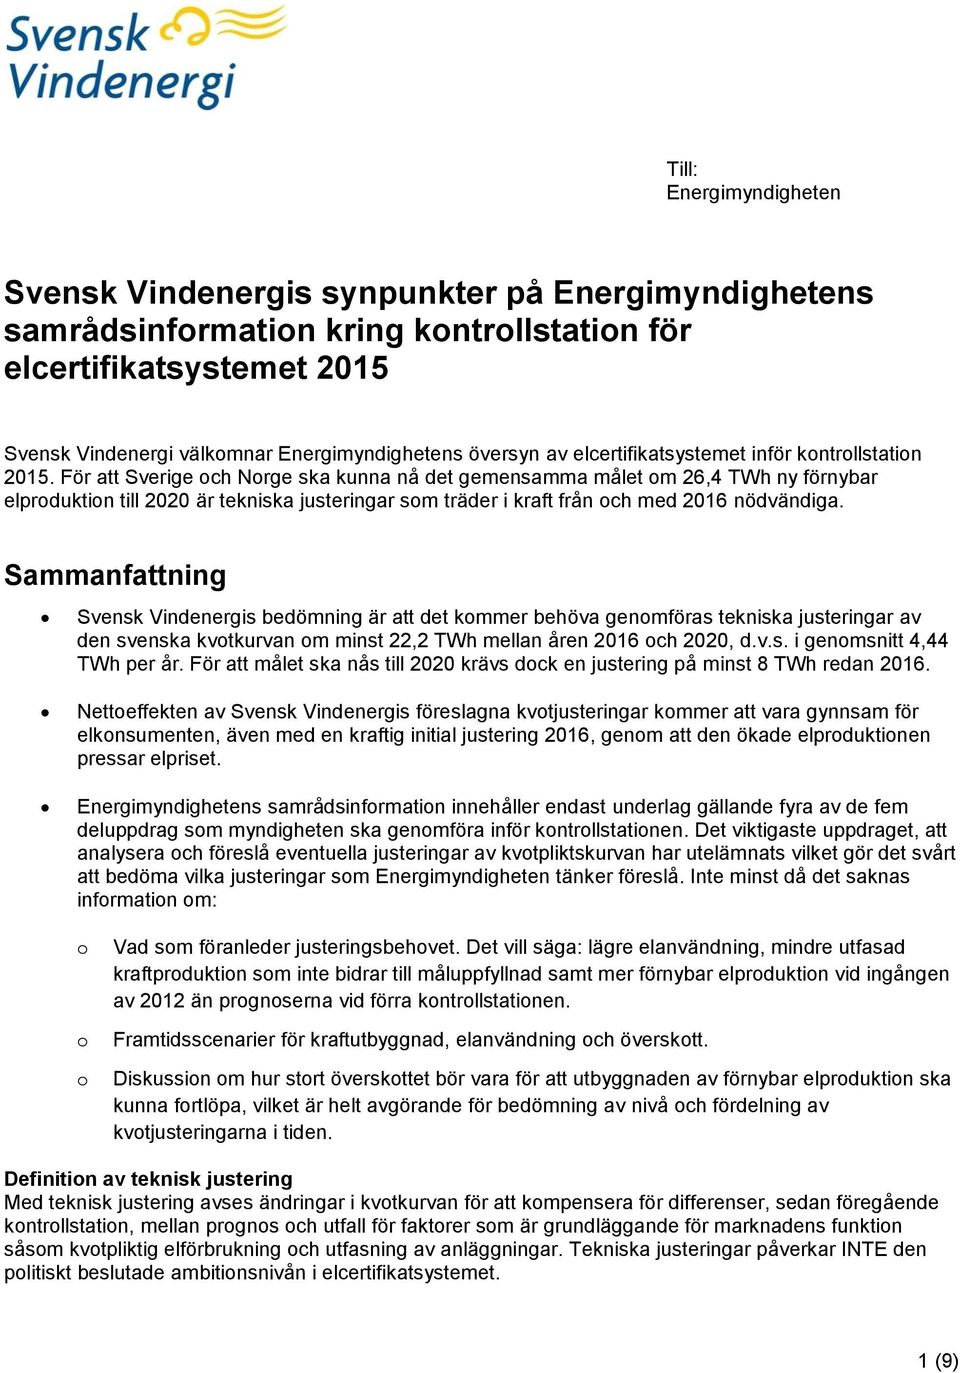 För att Sverige och Norge ska kunna nå det gemensamma målet om 26,4 TWh ny förnybar elproduktion till 2020 är tekniska justeringar som träder i kraft från och med 2016 nödvändiga.